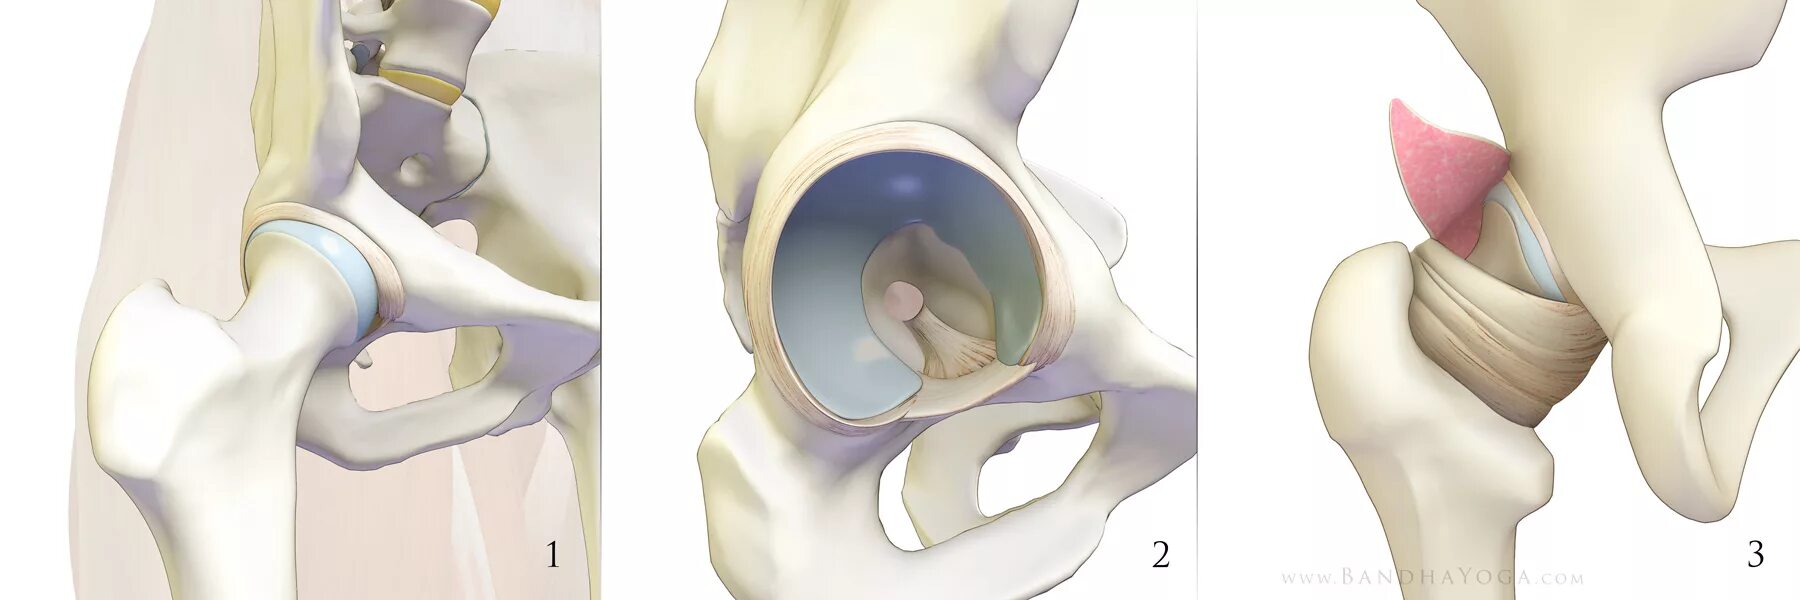 Тазобедренный сустав соединение. Лунная кость тазобедренного сустава. Суставная губа тазобедренного сустава анатомия. Лабрум тазобедренного сустава. Вертлужная губа тазобедренного сустава анатомия.